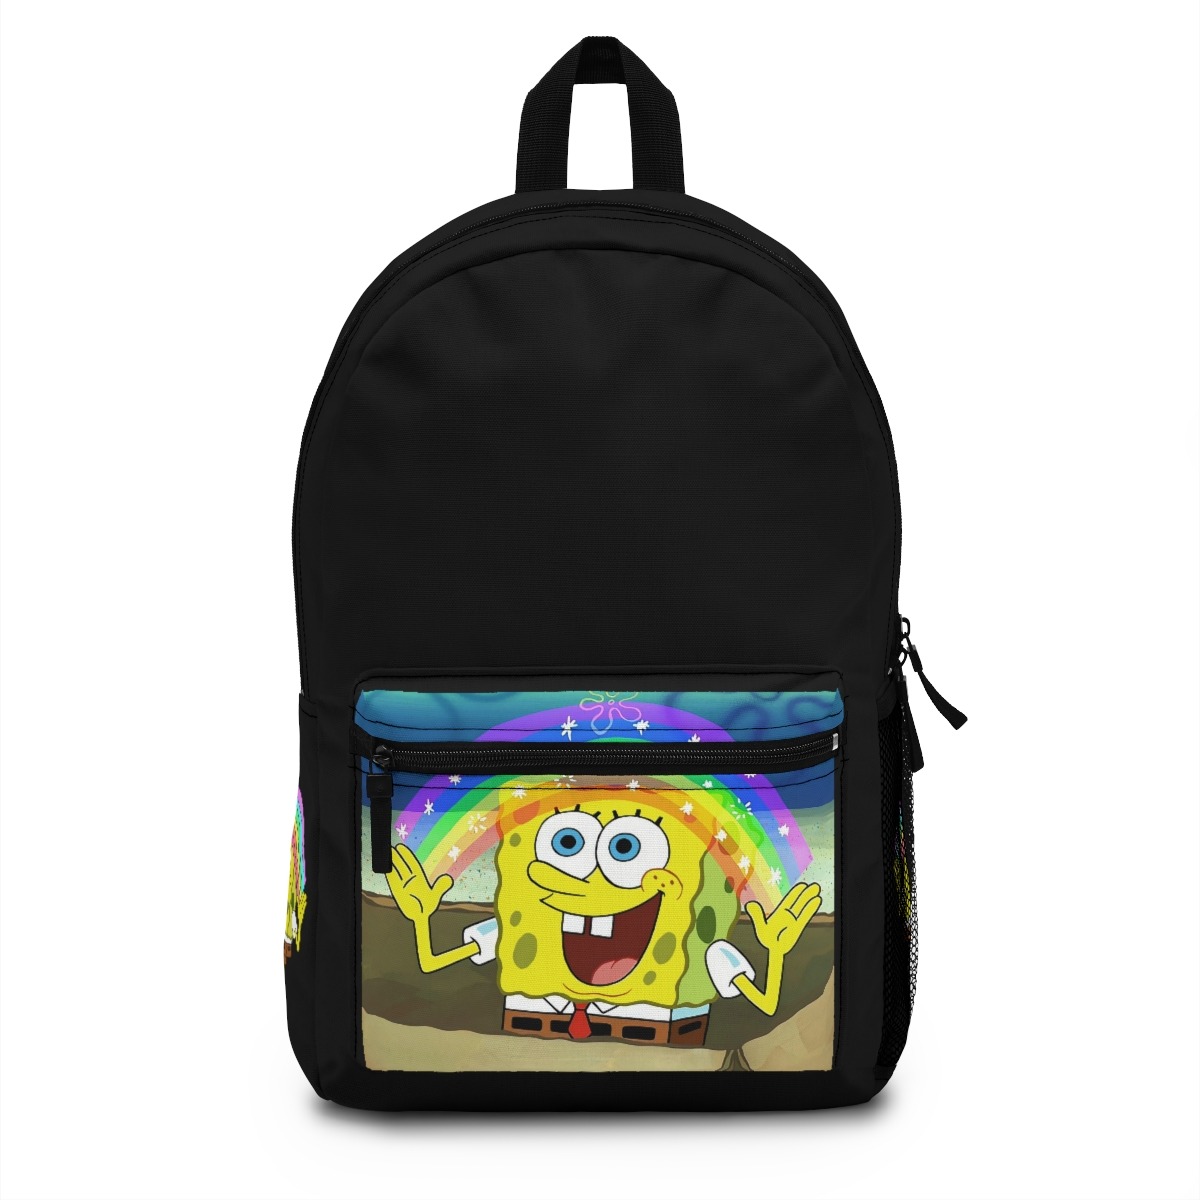 Spongebob squarepants backpack - spongebob squarepants bookbag - spongebob squarepants merch - spongebob squarepants apparel